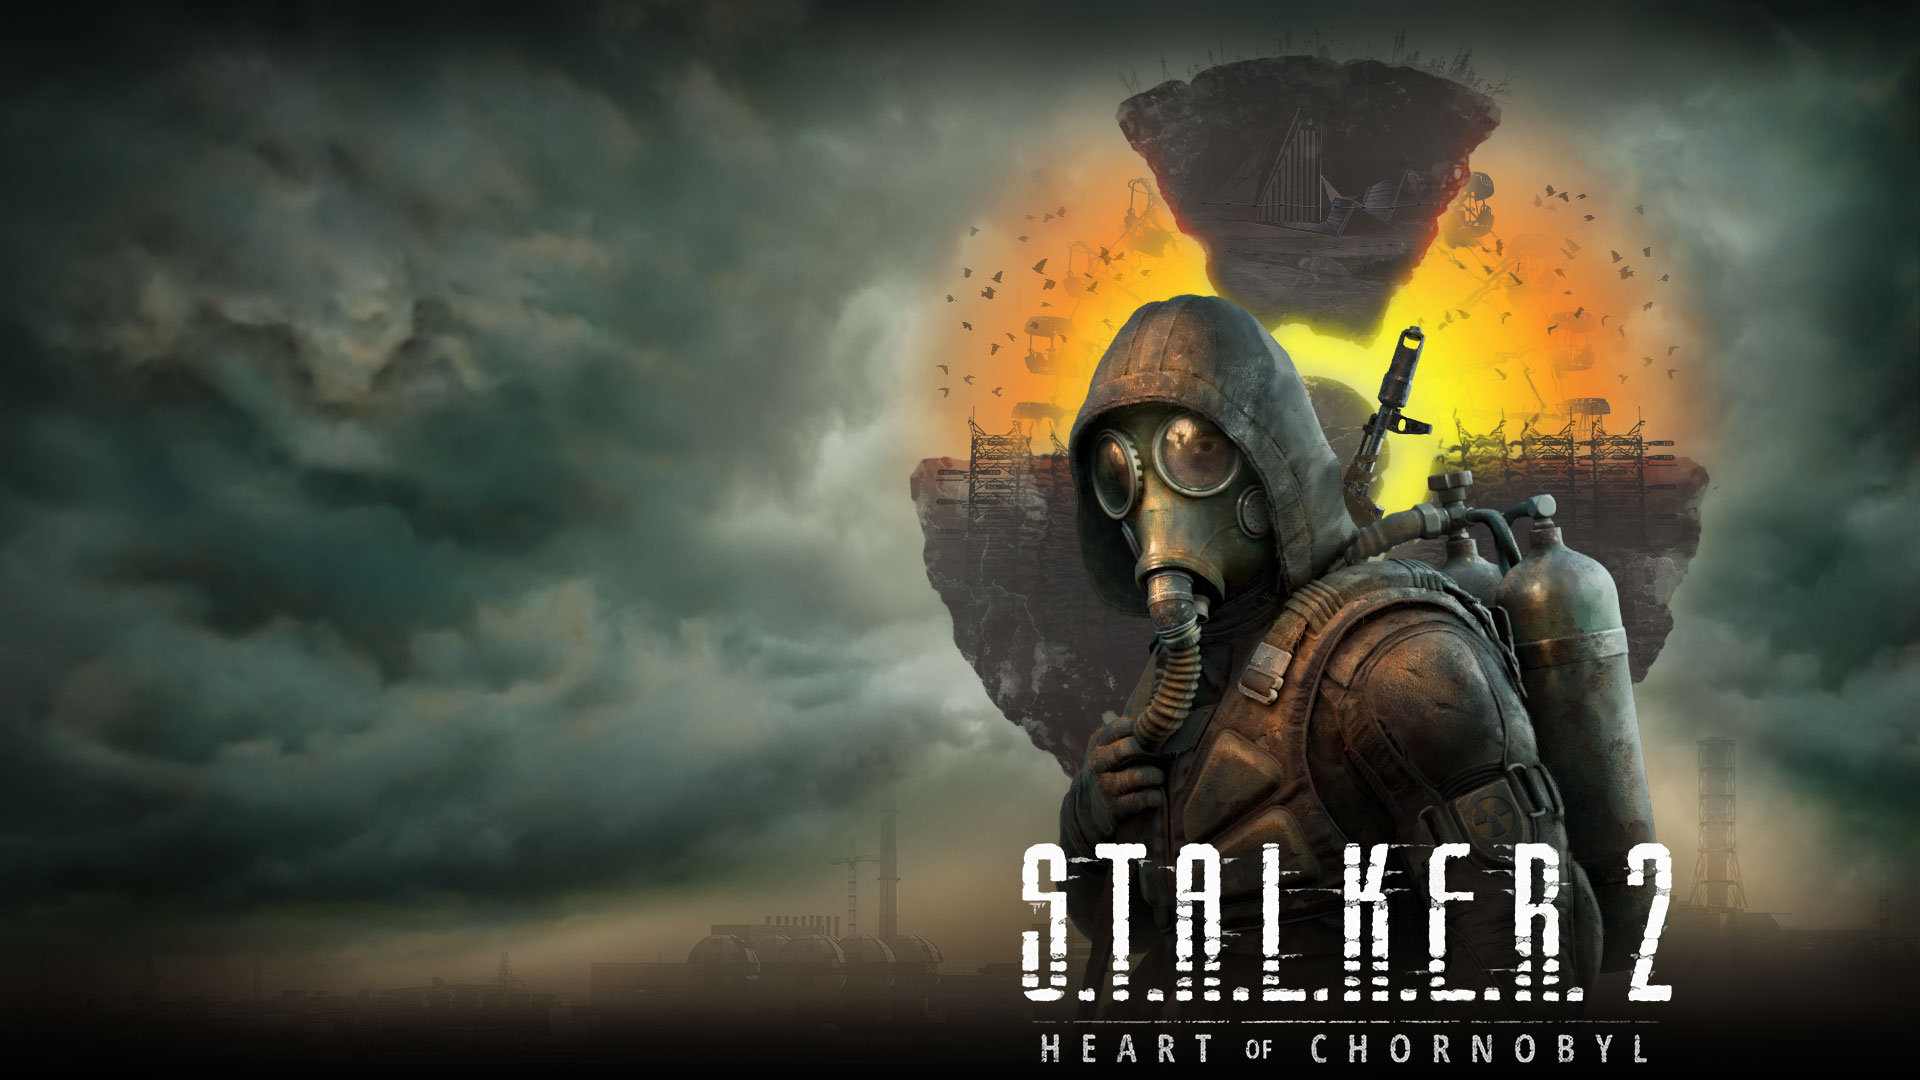 Stalker 2 Heart of Chornobyl, un personaje frente a un paisaje flotante con nubes y humo en el aire.